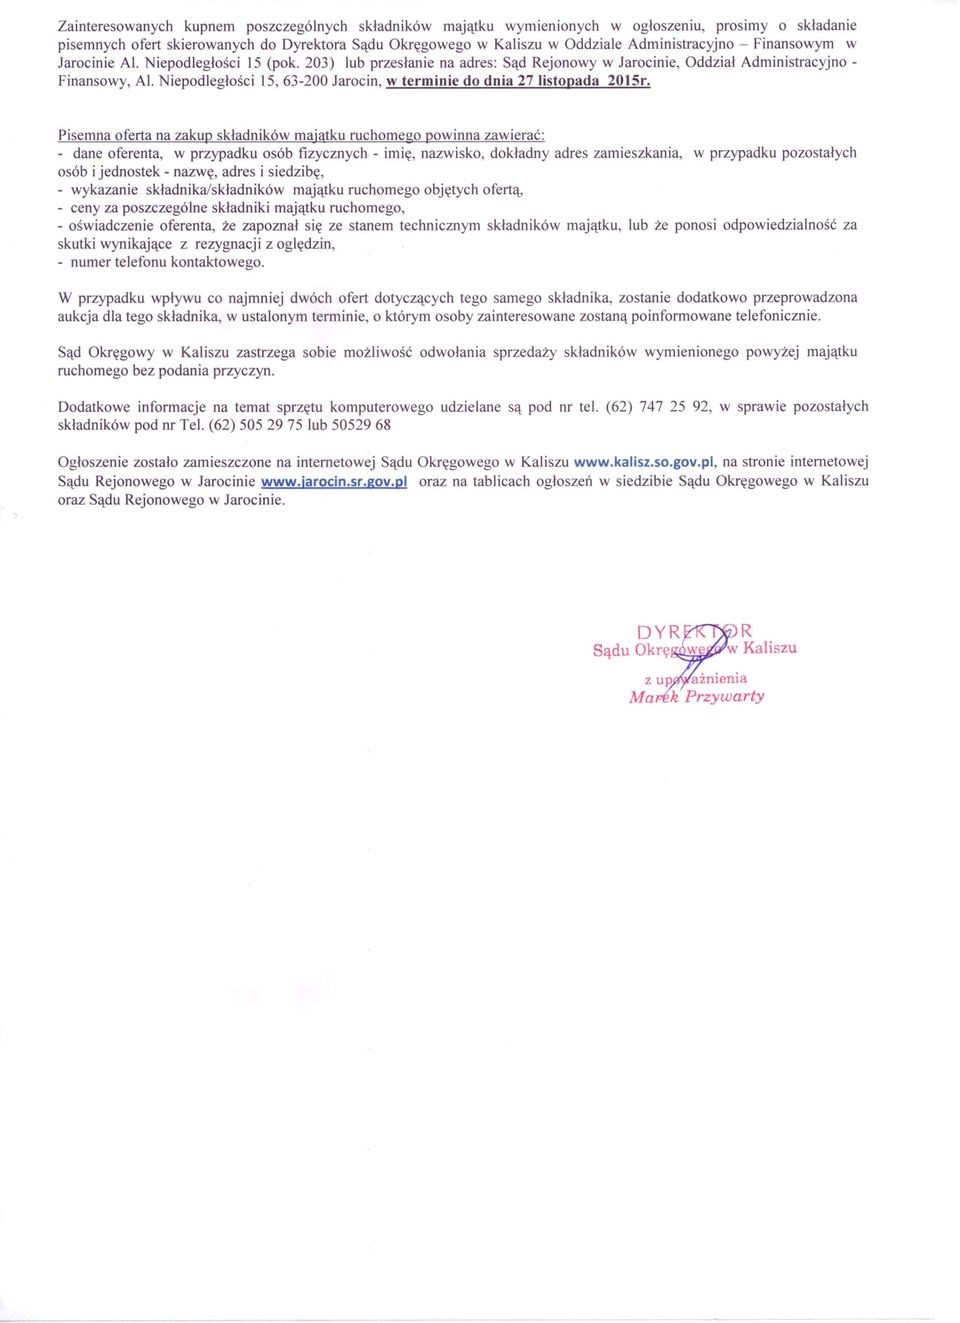 Niepodległości 15,63-200 Jarocin, w terminie do dnia 27 listopada 2015r.